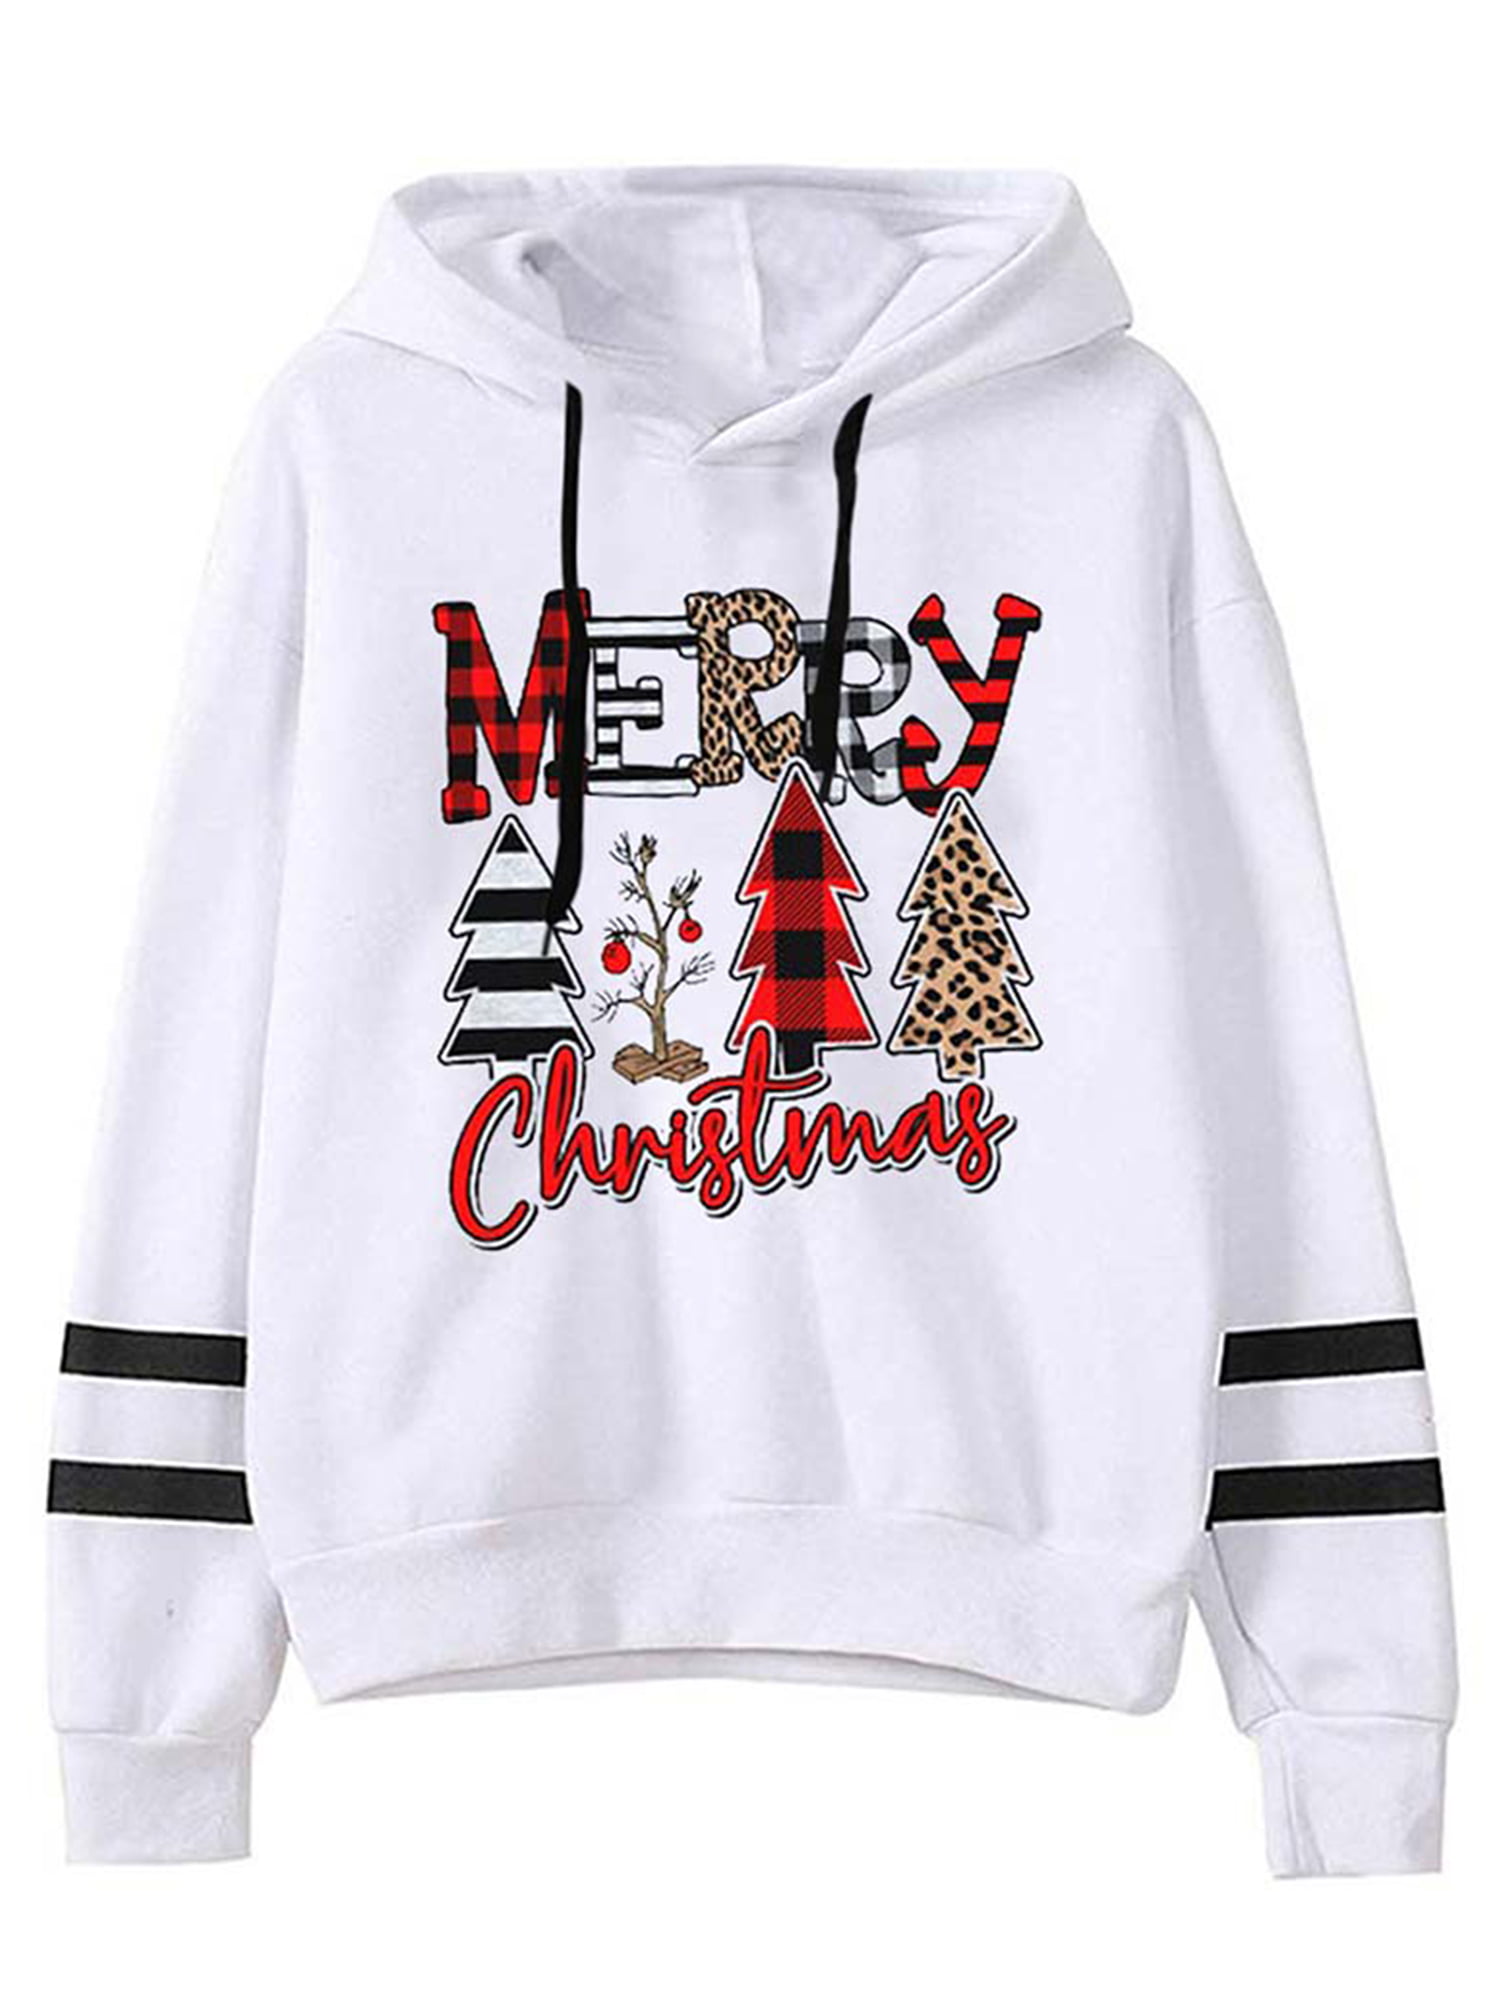 Hotkey Women Christmas Long Sleeve Hoodie Sweatshirt Plaid Print Color Splice Hooded Pullover Casual Loose Tops Jumper Blouse 